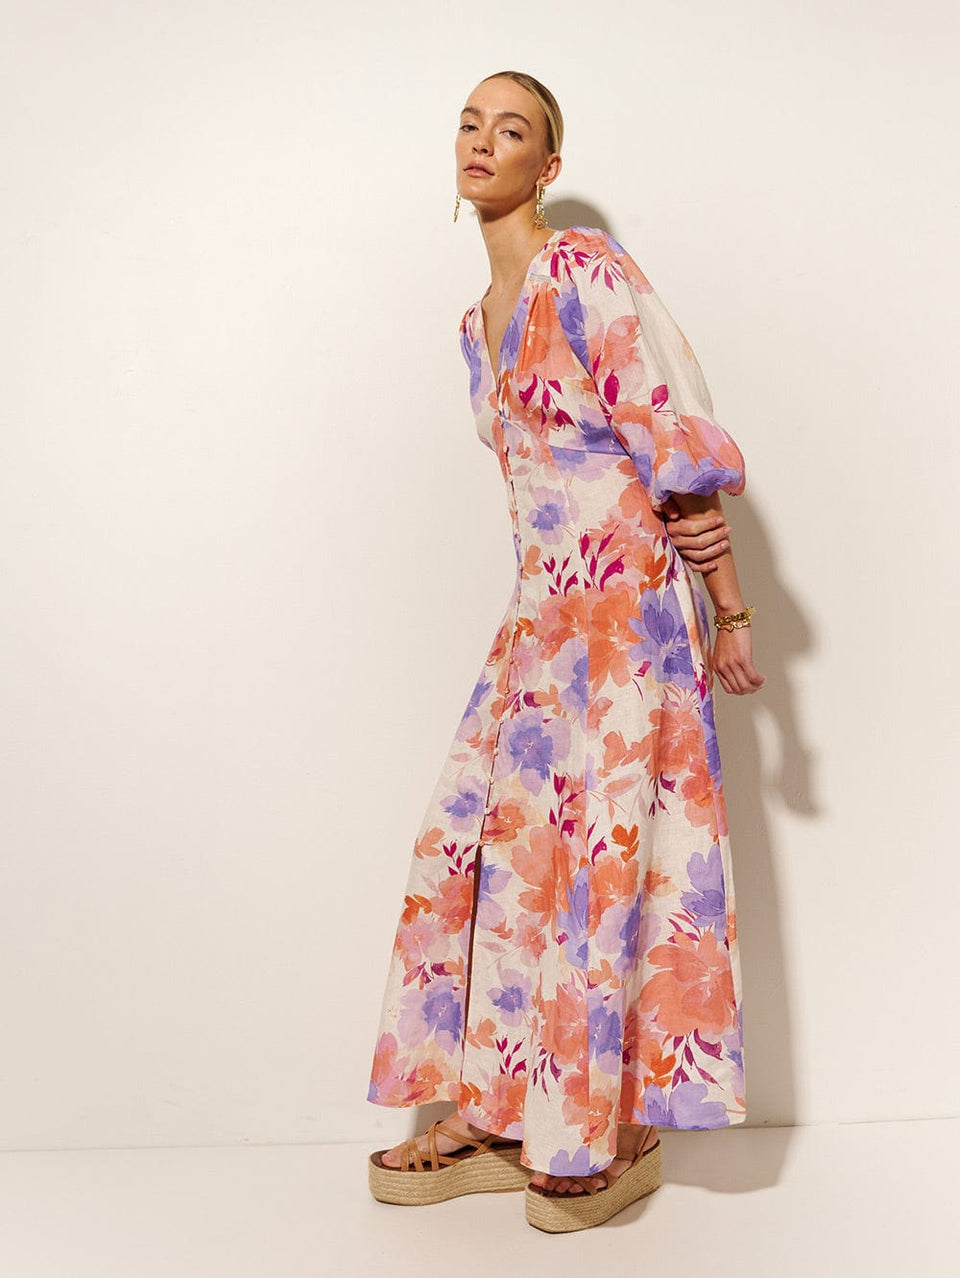 Johannes Maxi Dress KIVARI | Model wears pink and purple floral maxi dress side view